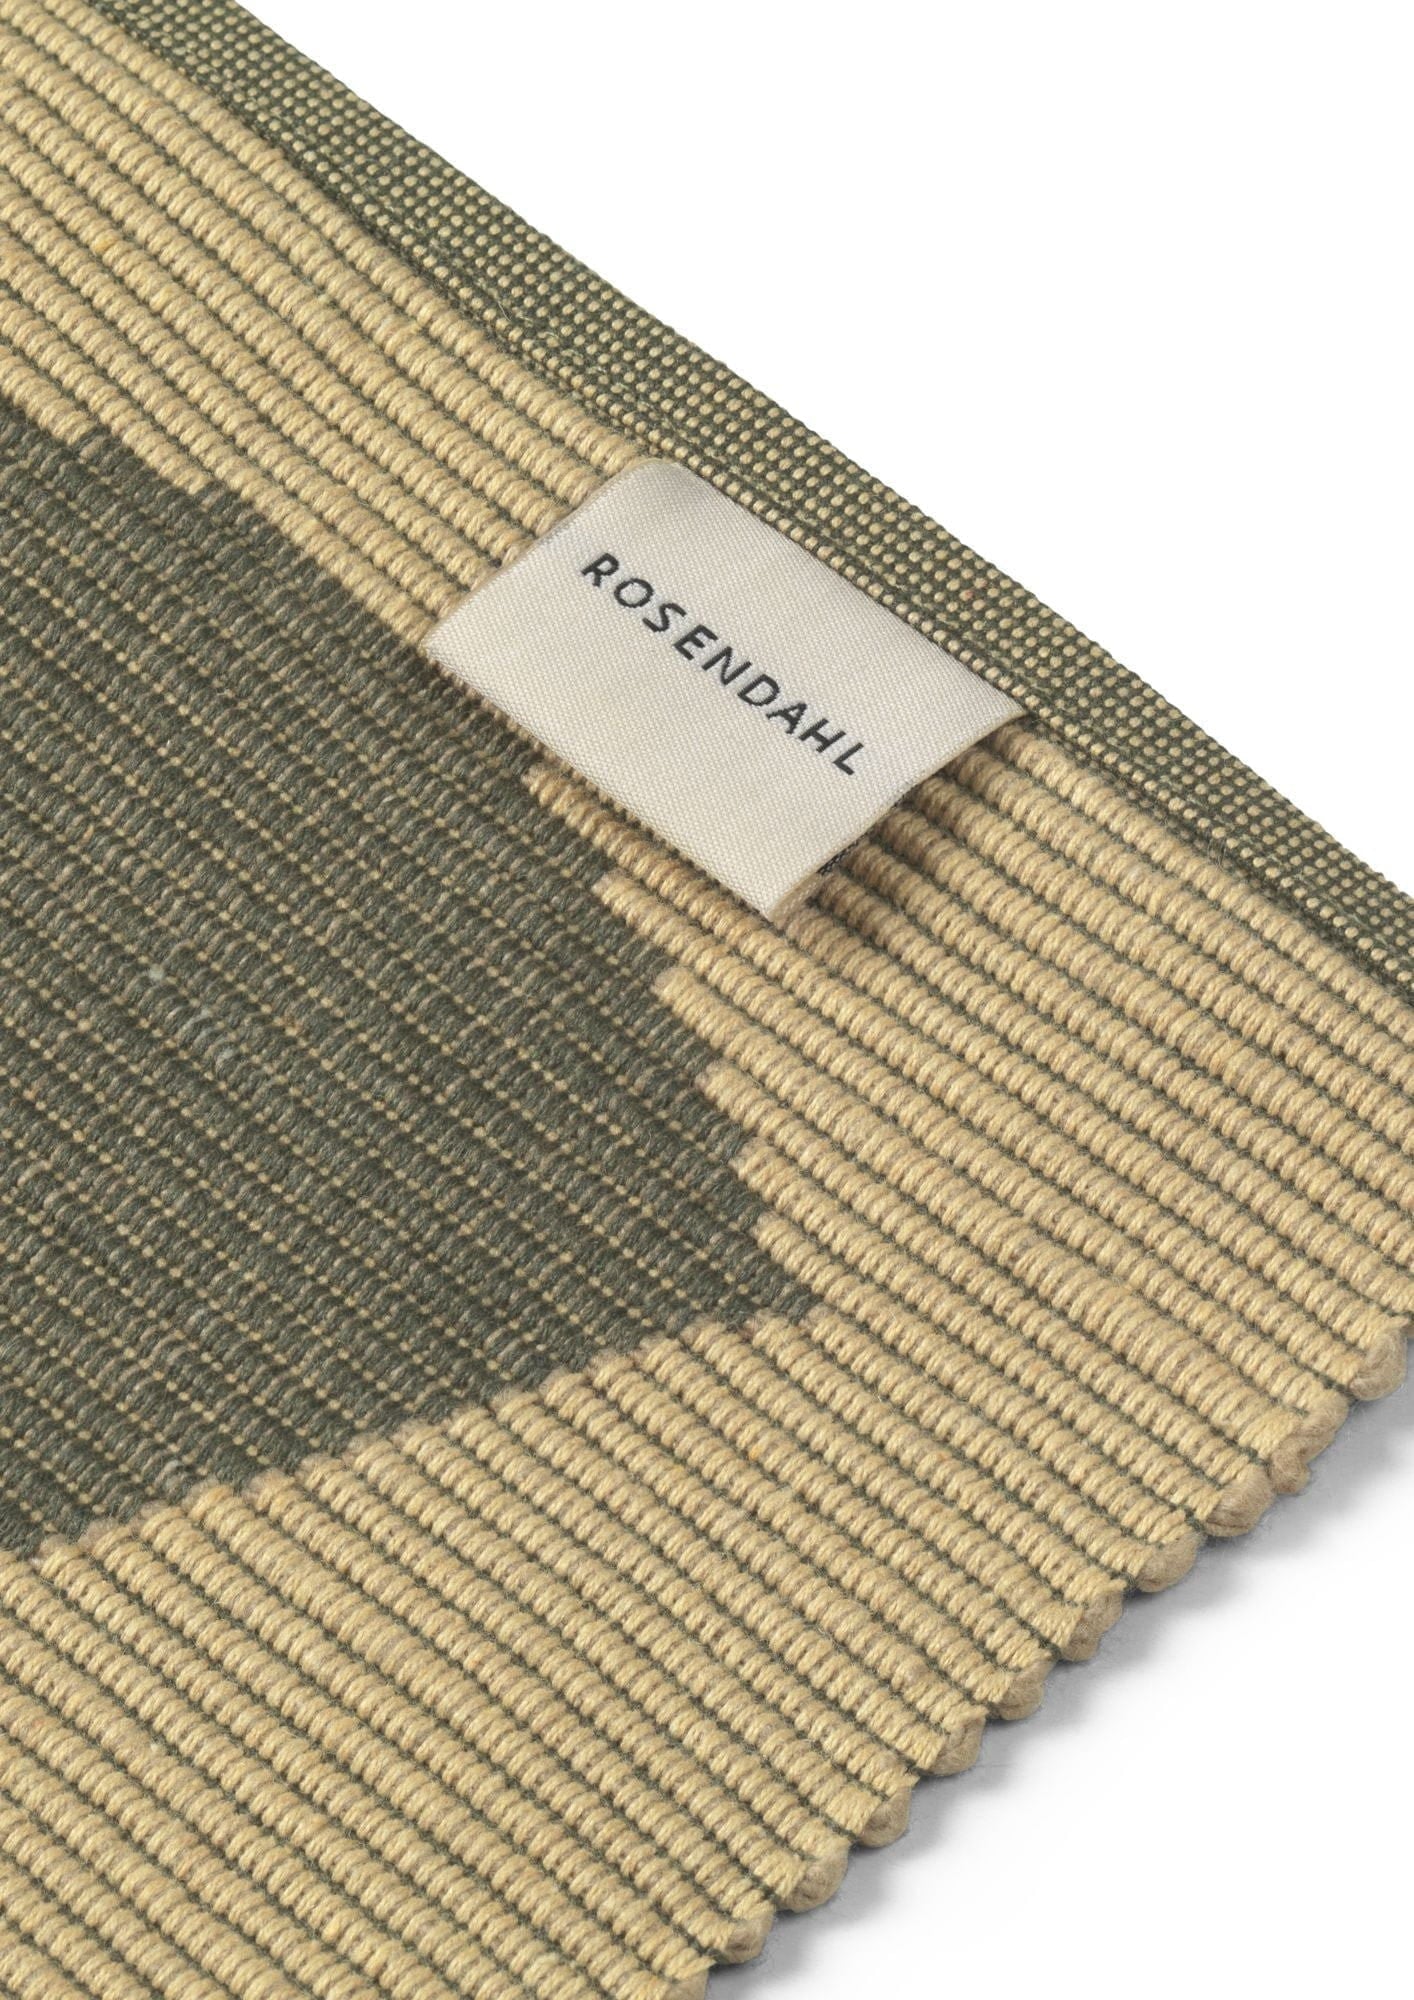 Rosendahl Rosendahl Textiles utomhus Natura 43x30 cm, grön